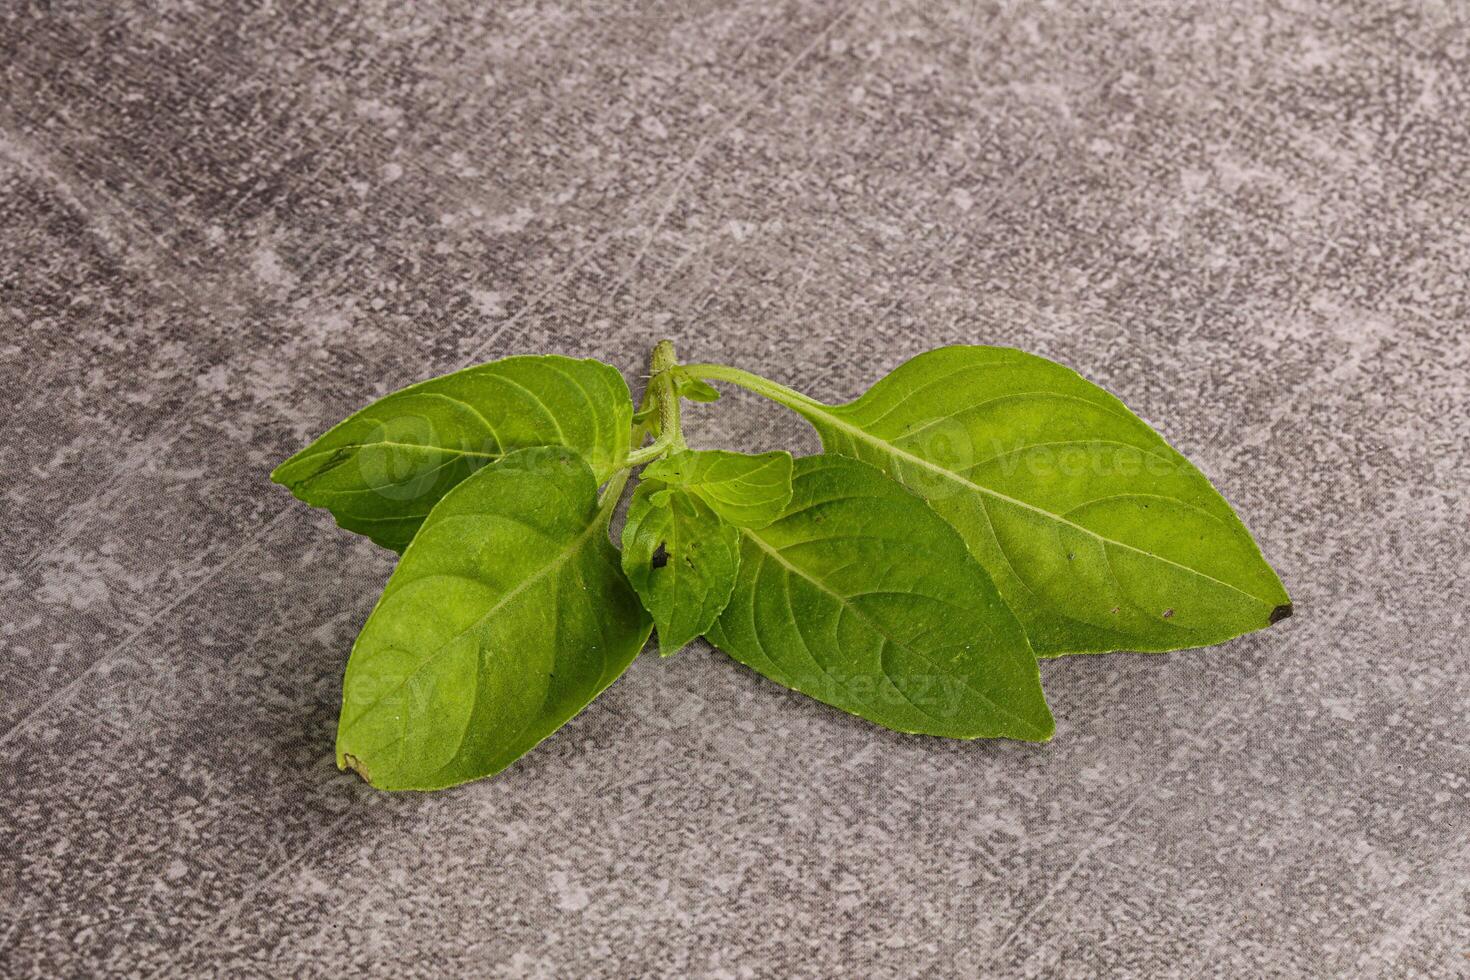 crudo verde albahaca hojas Condimento foto